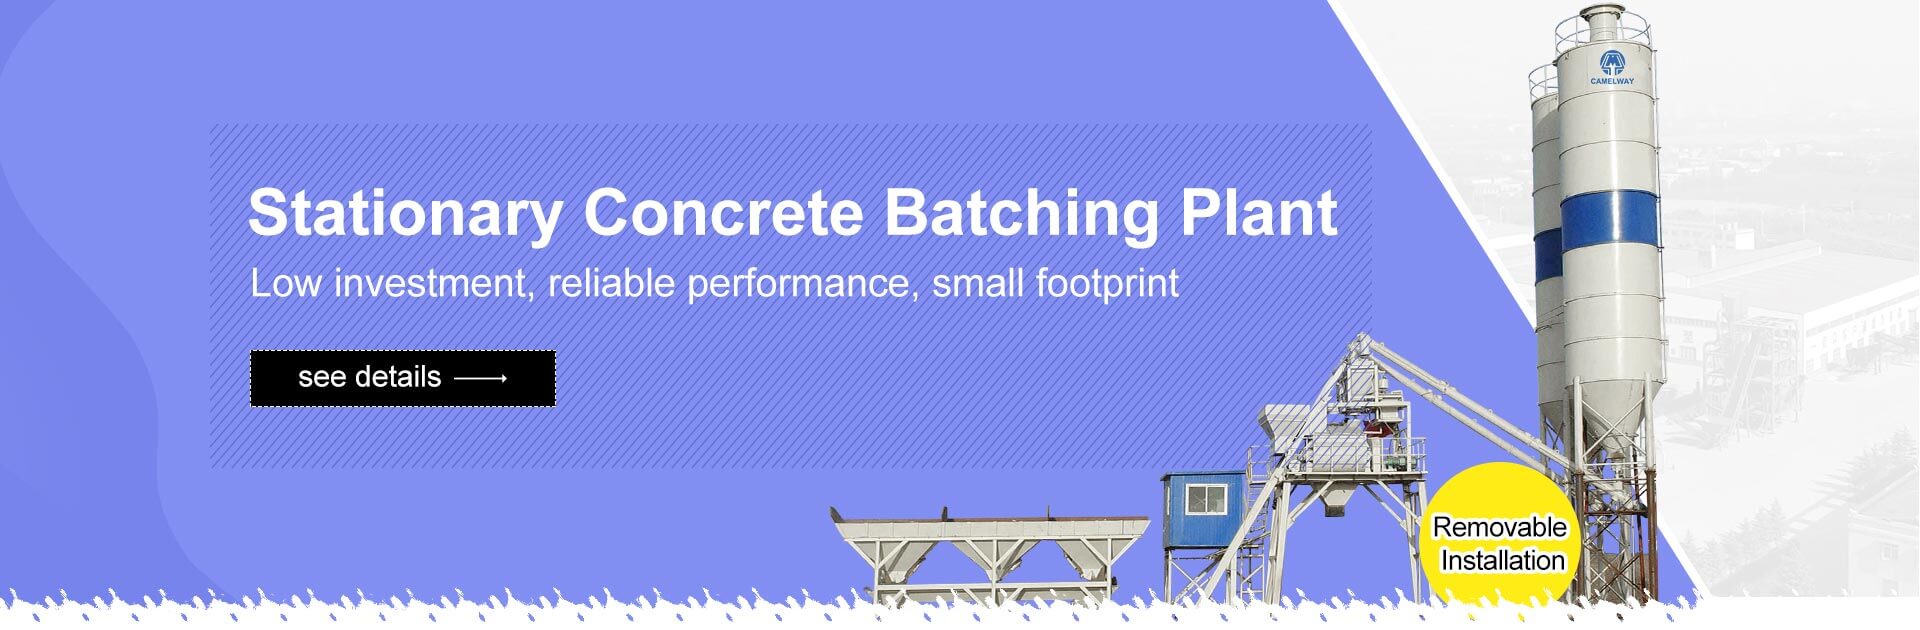 concrete batching plant for sale